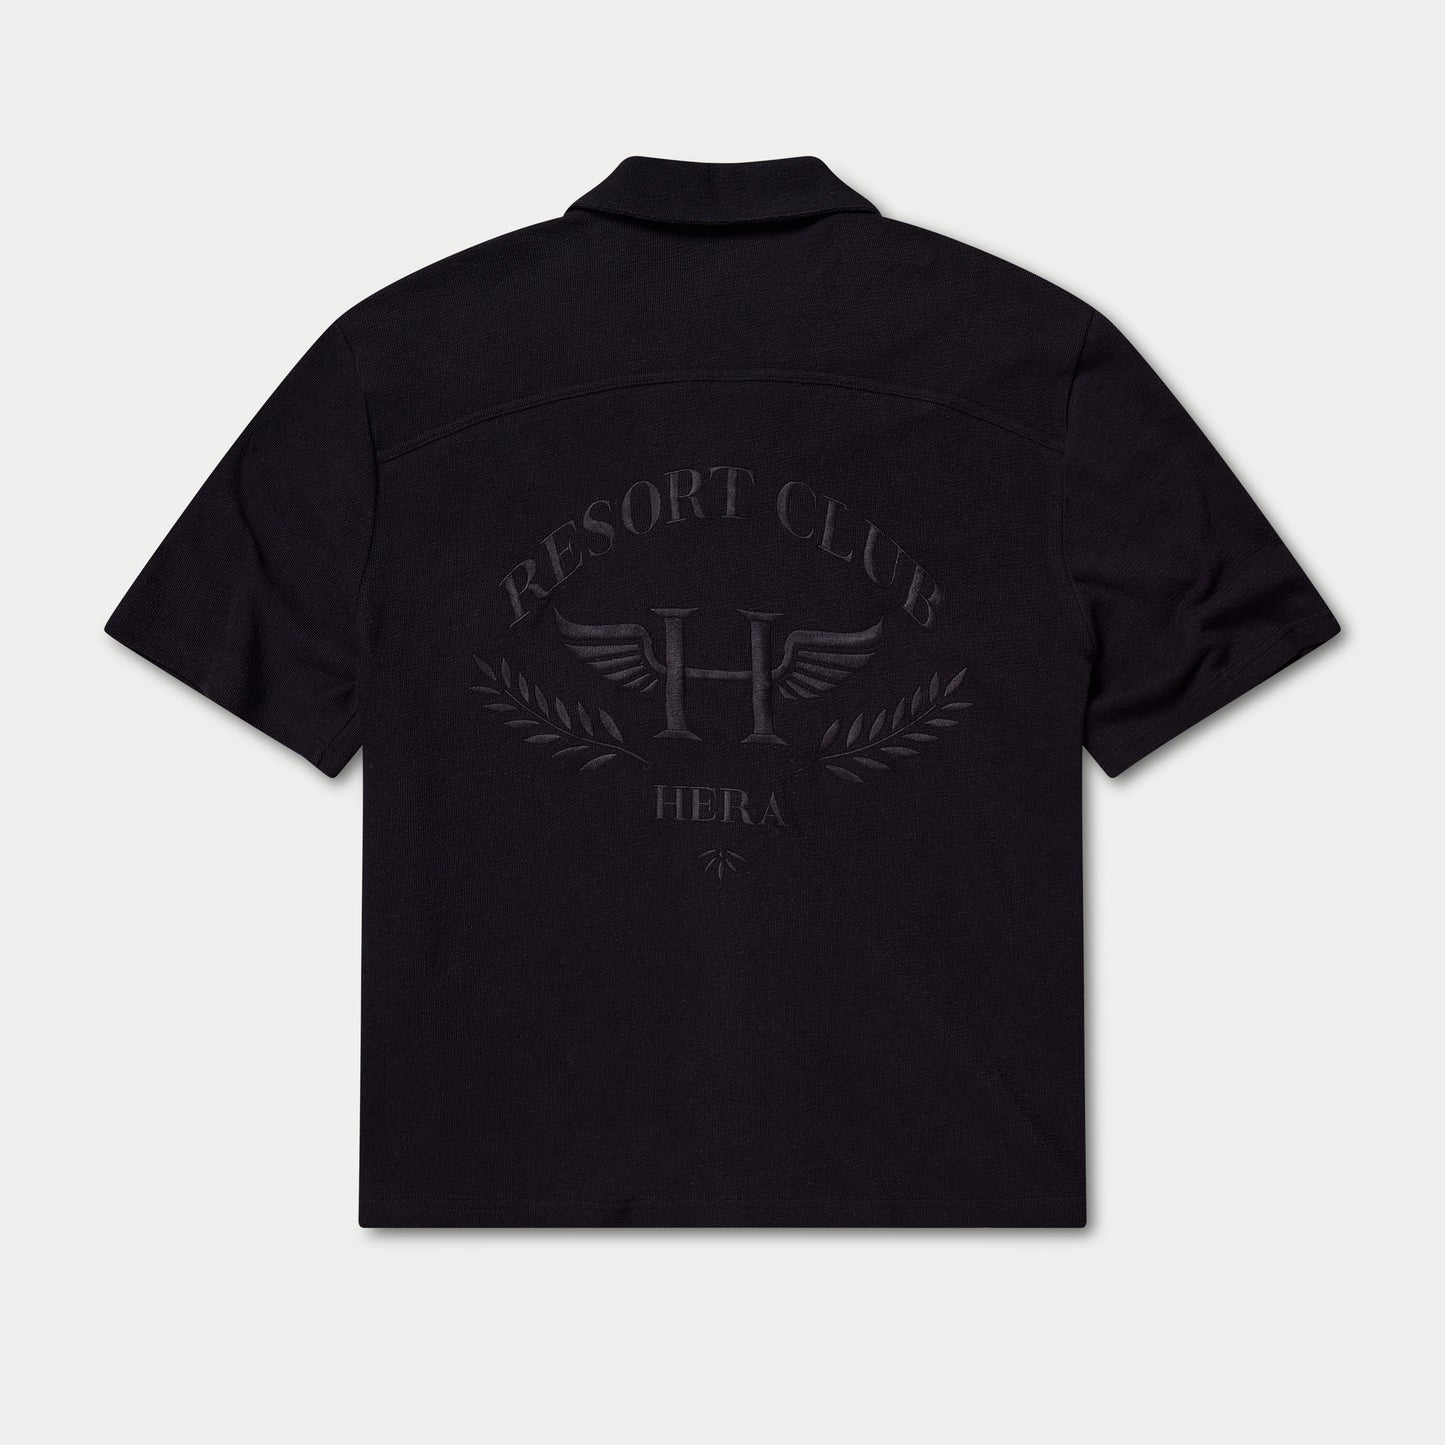 Mens Resort Club Shirt - Black